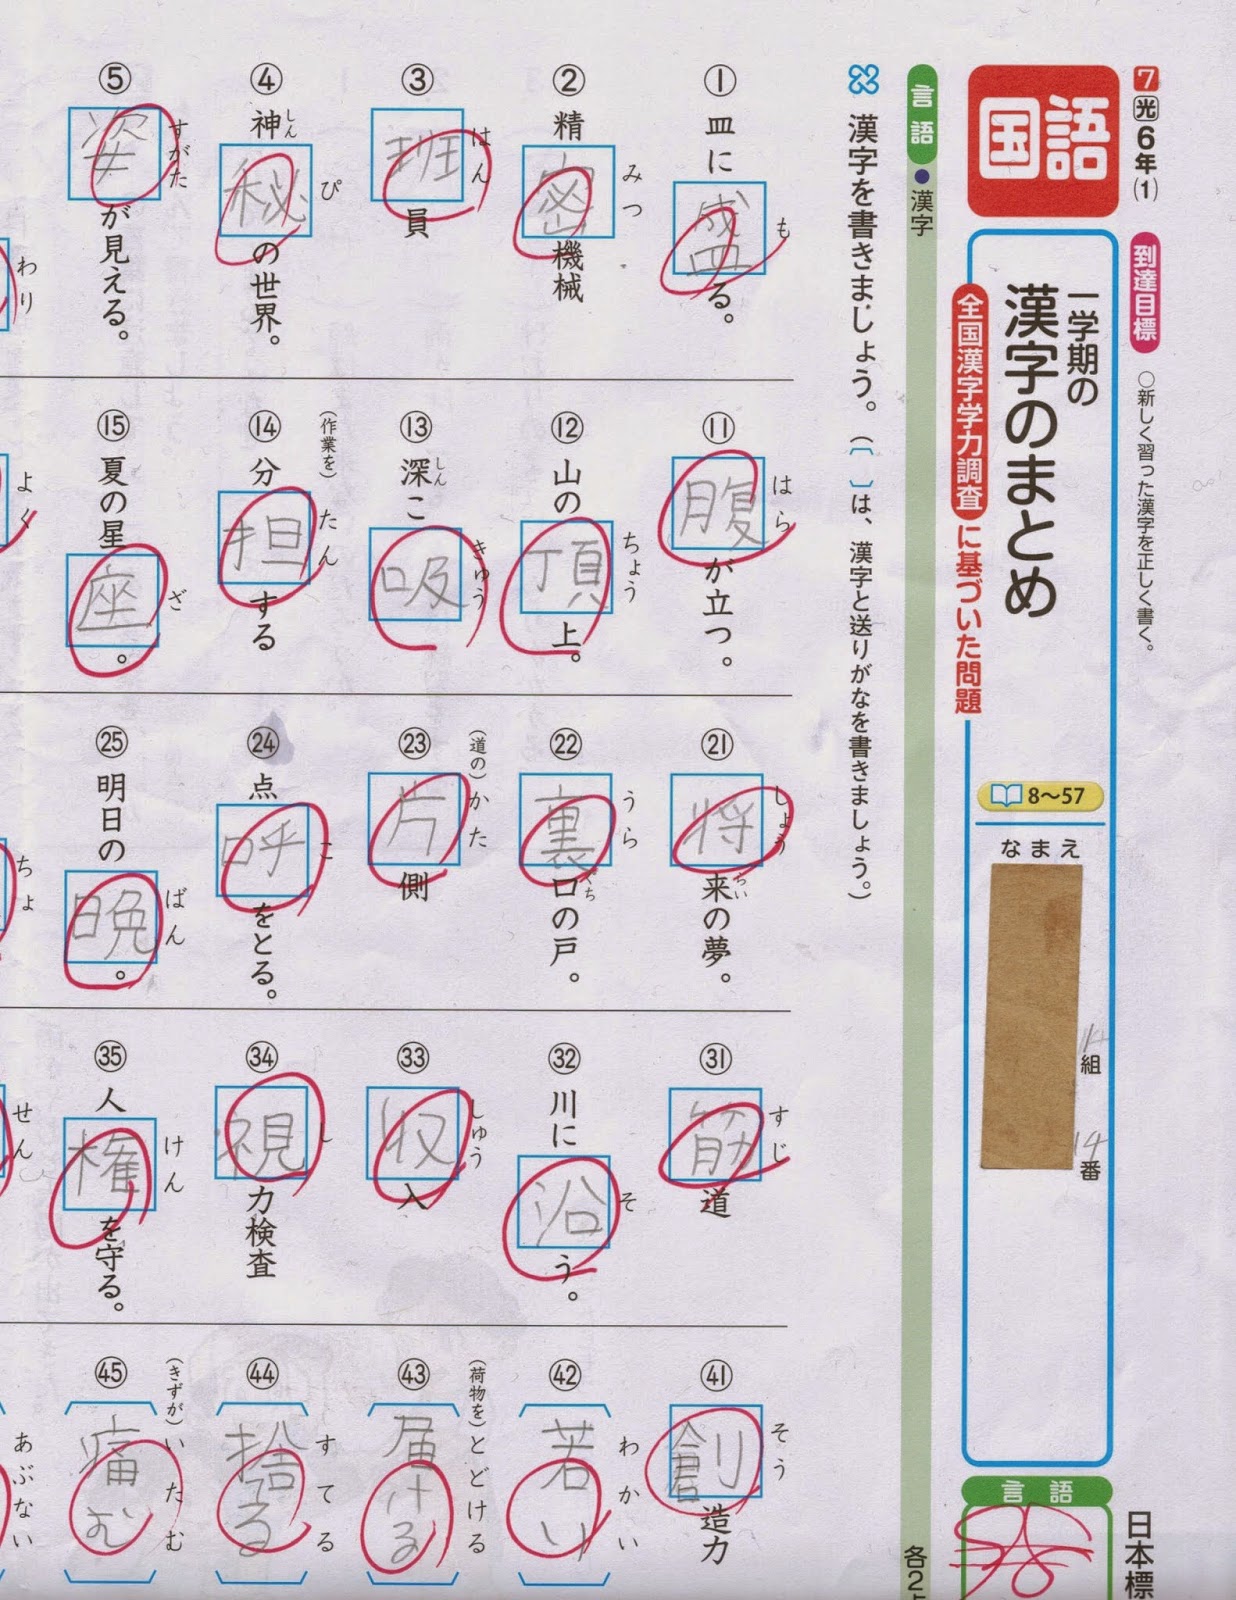 漢字テスト 5 年生 で 習う 漢字 1 学期 シモネタ